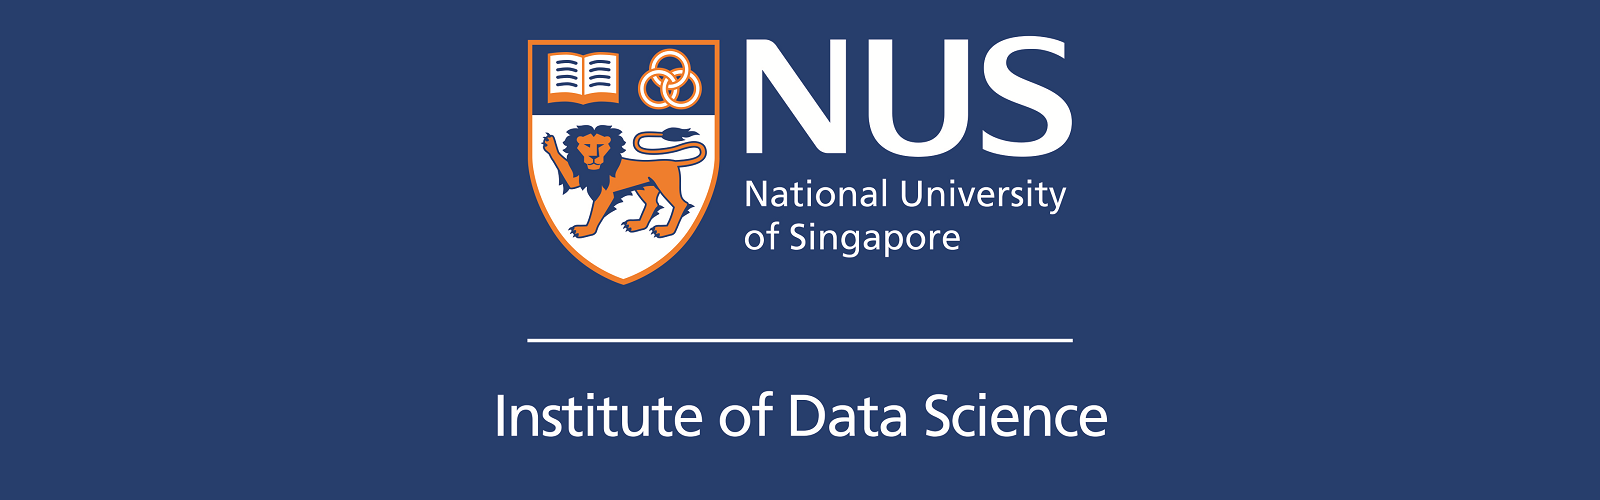 nus phd in data science